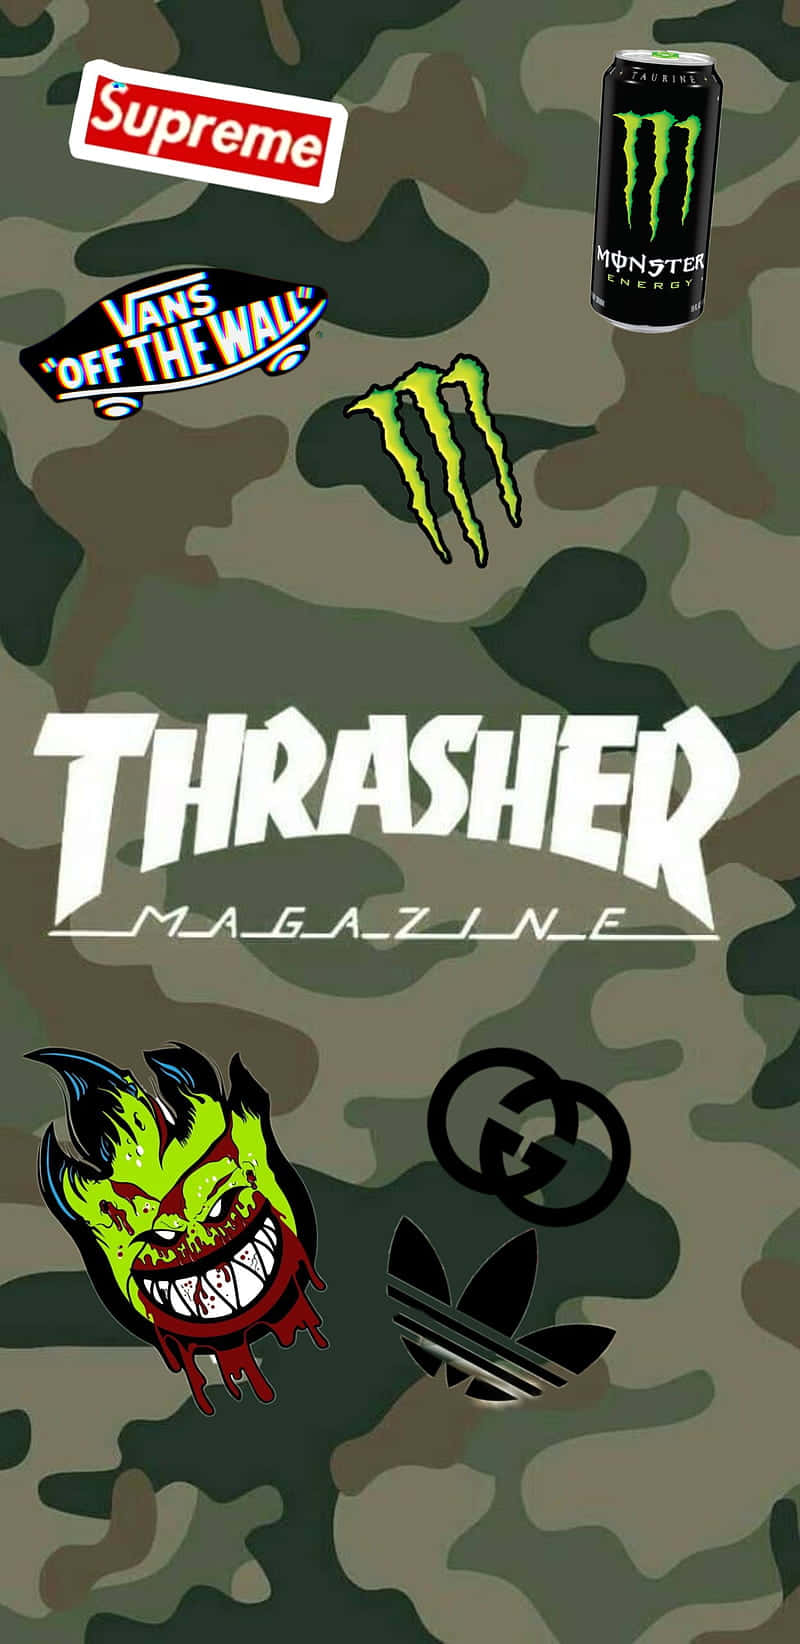 Spitfireskate-logo Auf Dem Thrasher Magazine Wallpaper